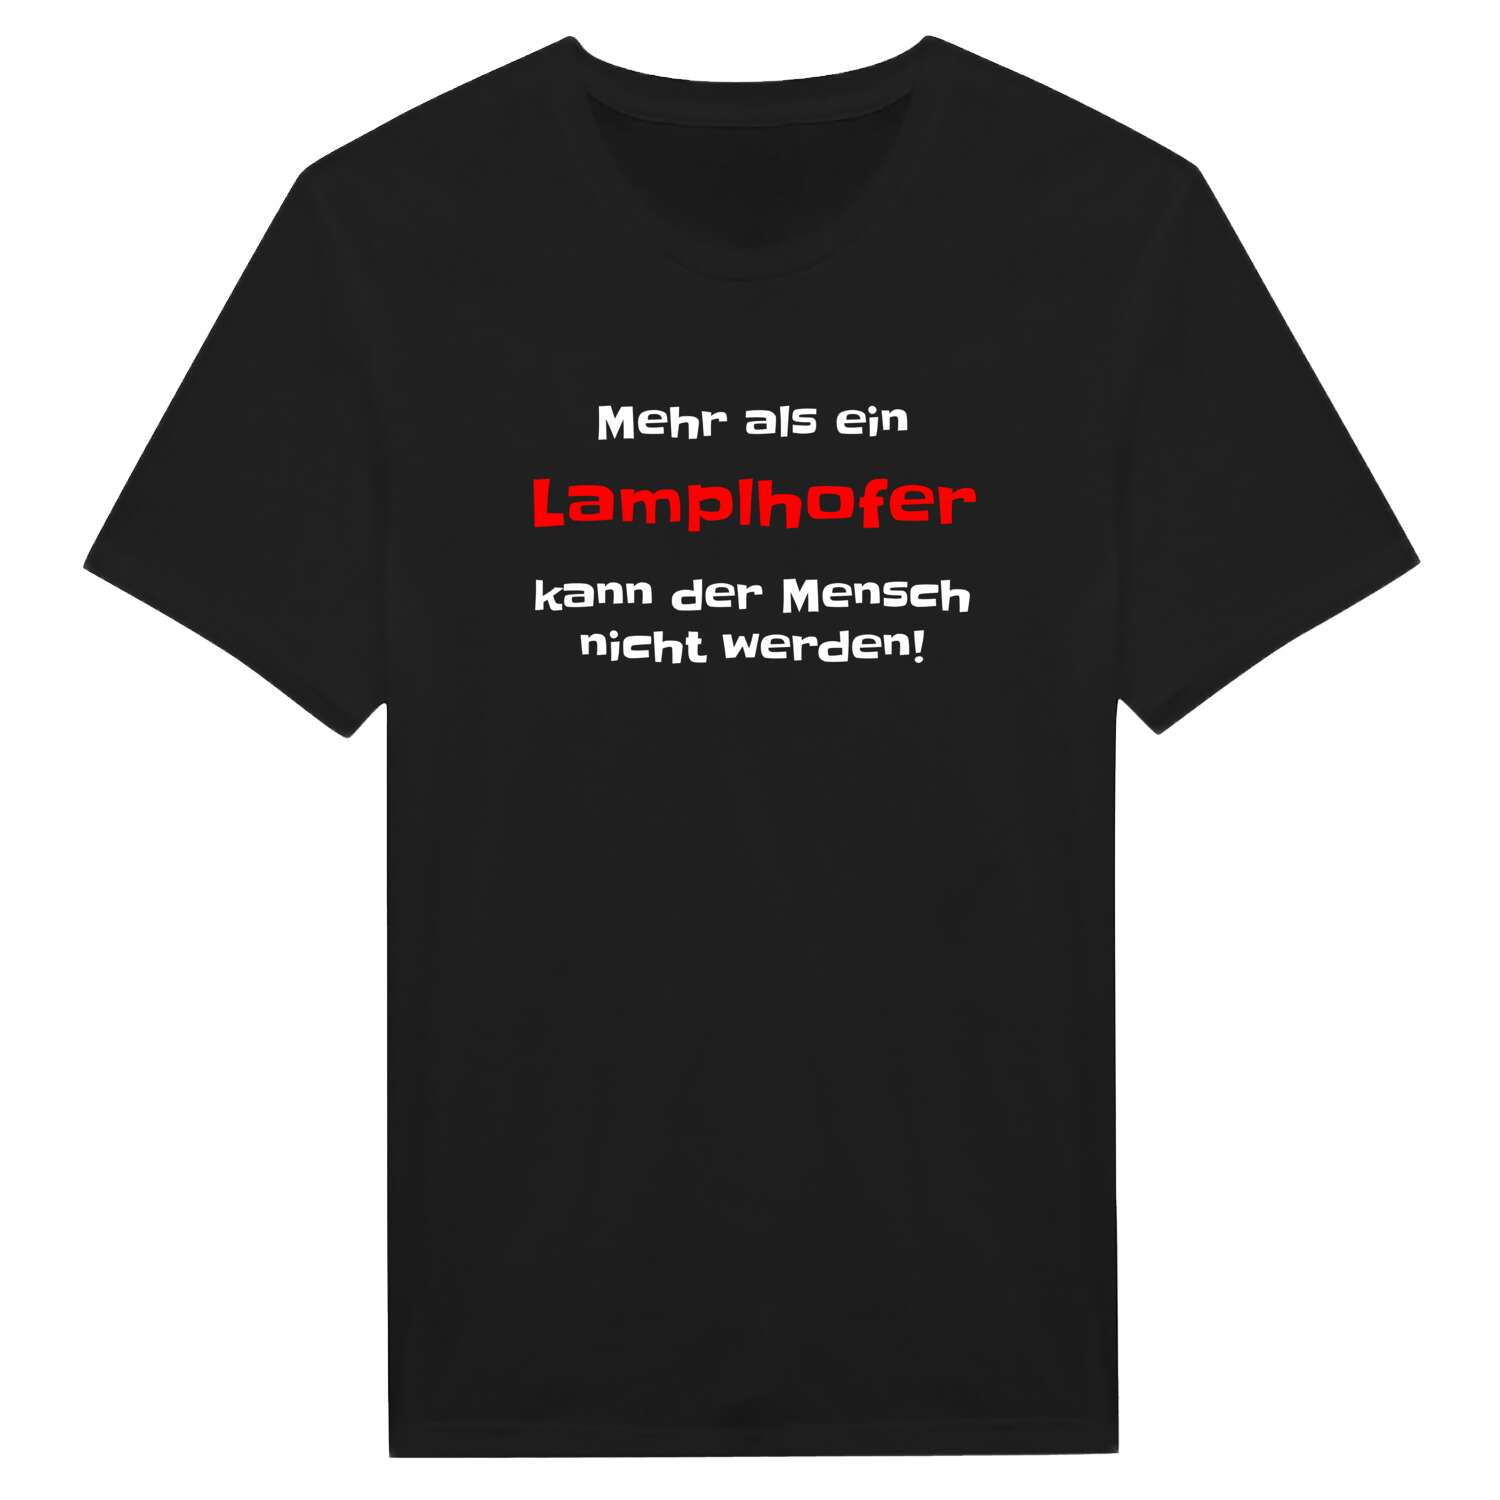 Lamplhof T-Shirt »Mehr als ein«